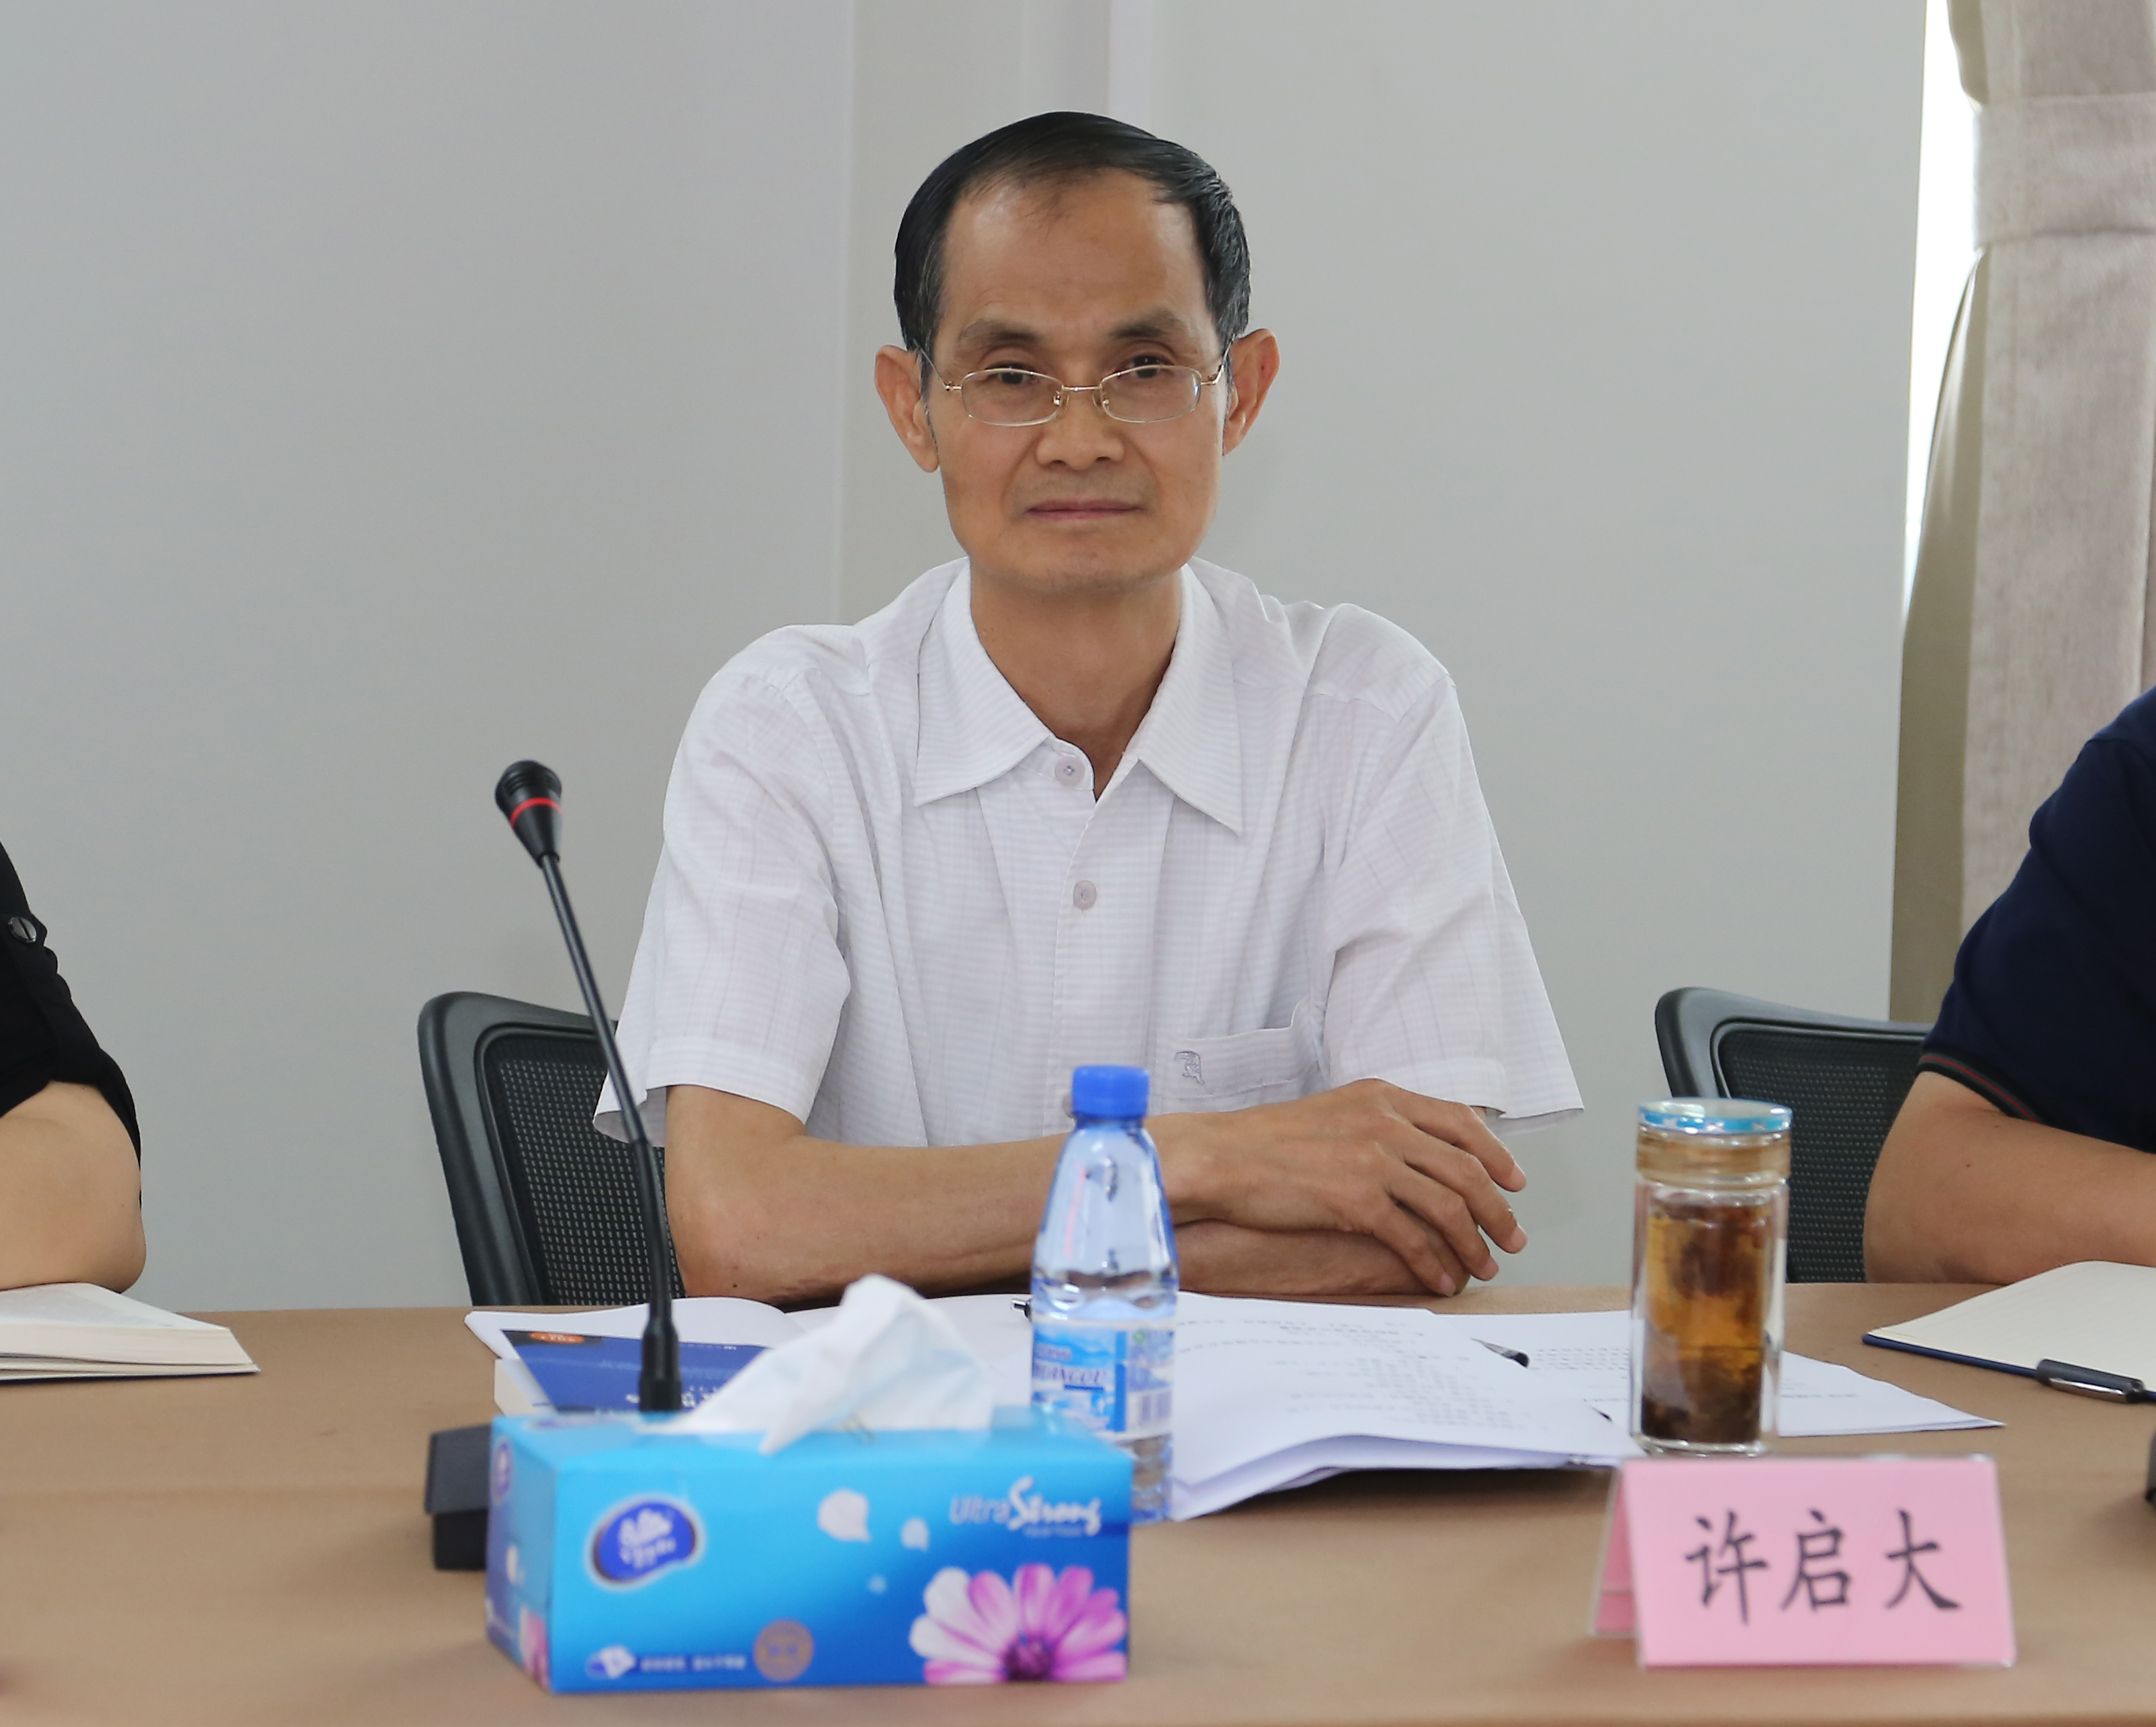 中国志愿服务联合会研究中心主任许启大出席会议并讲话